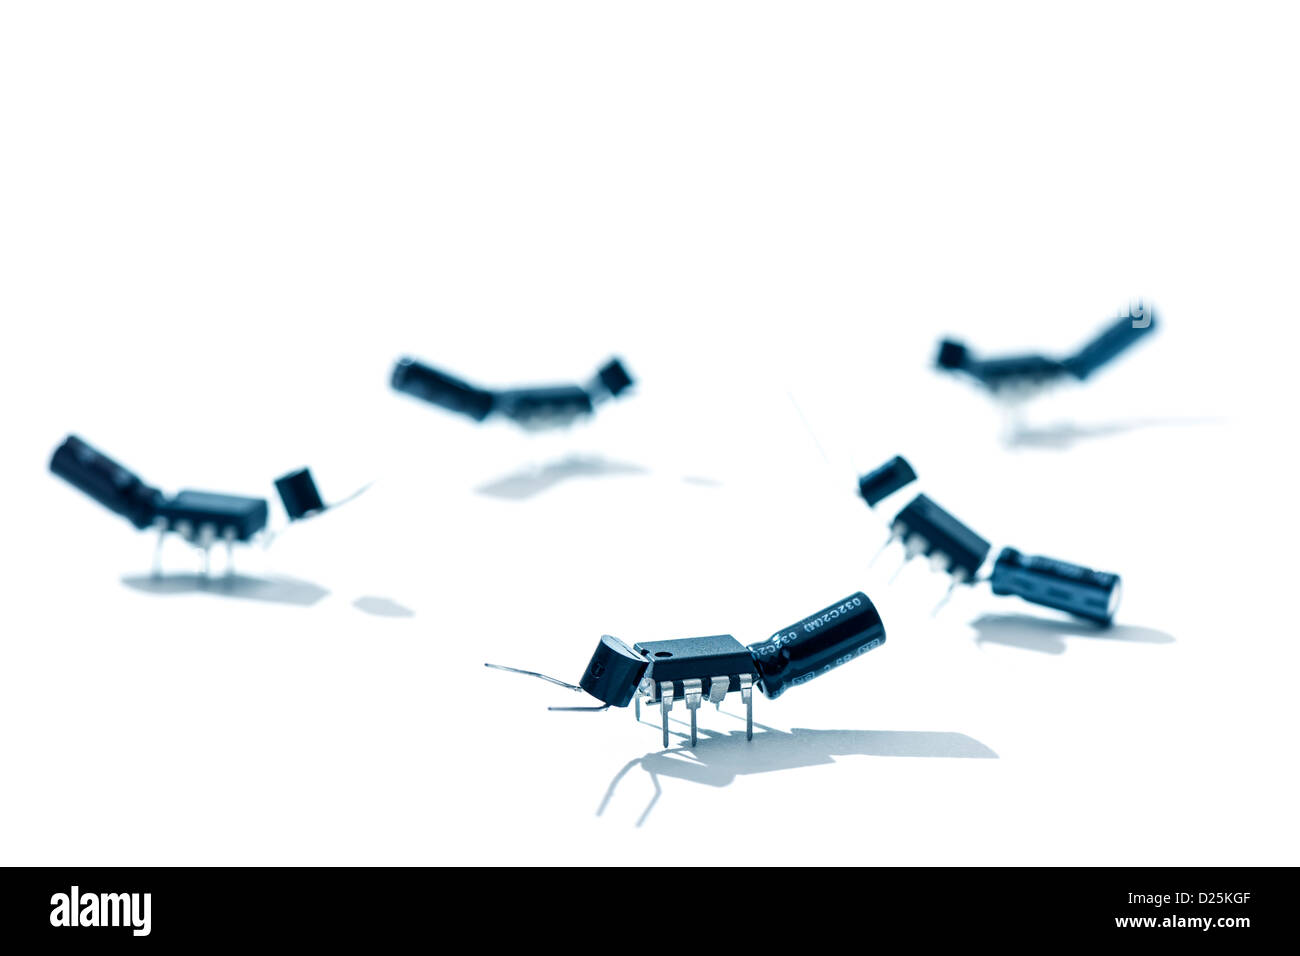 Las hormigas / bugs hechas de microchips y otros componentes electrónicos Foto de stock